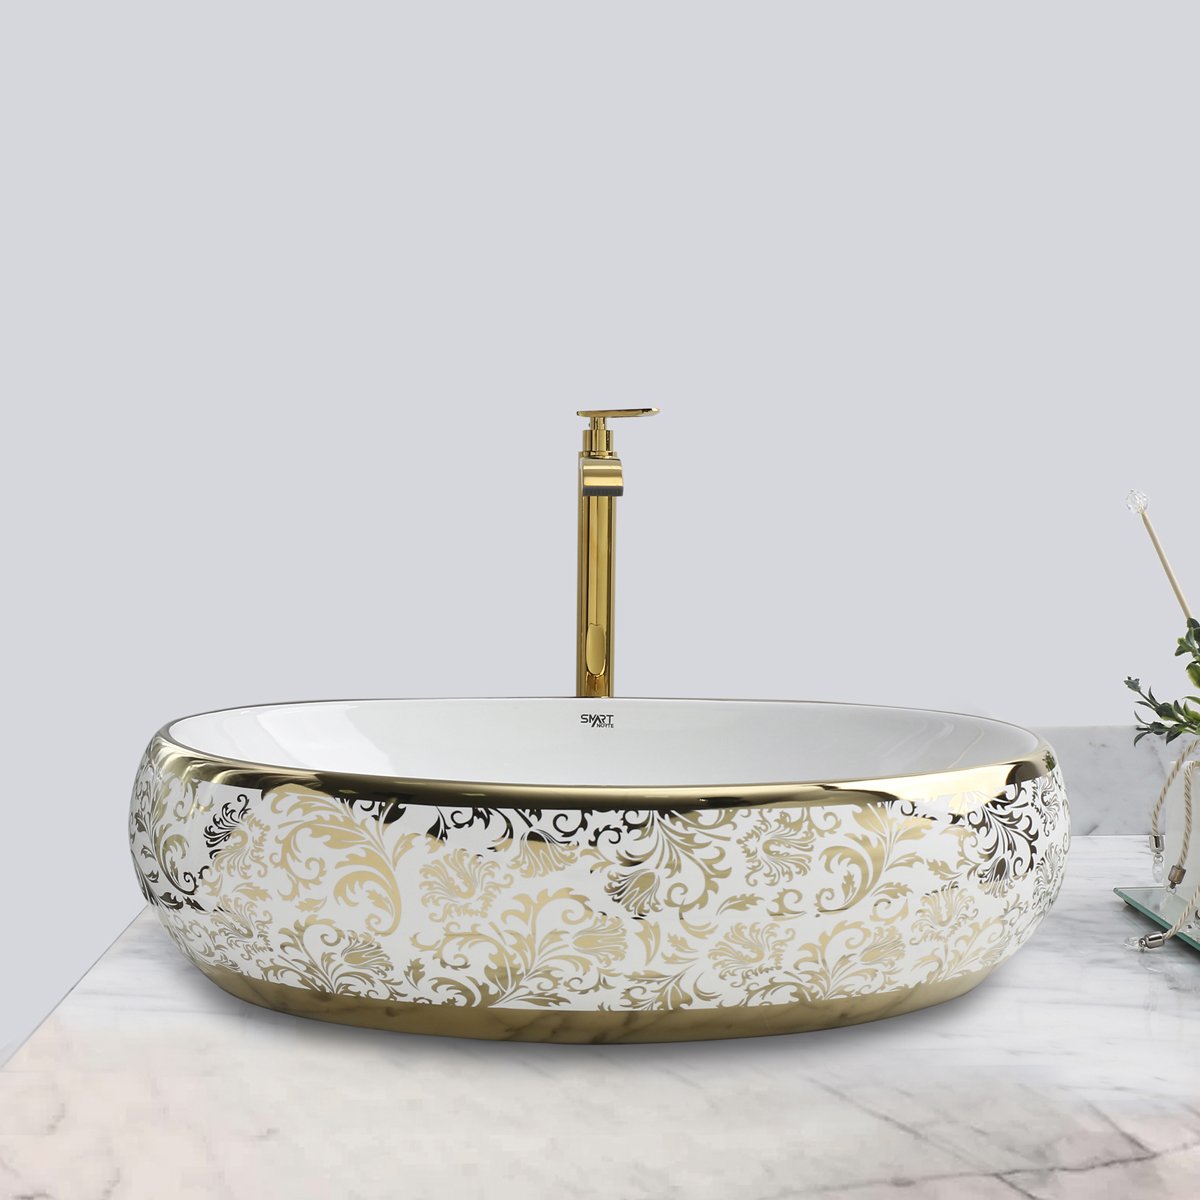 Cuba Dourada Oval Luxo Lavabo Banheiro 62x42cm - 3